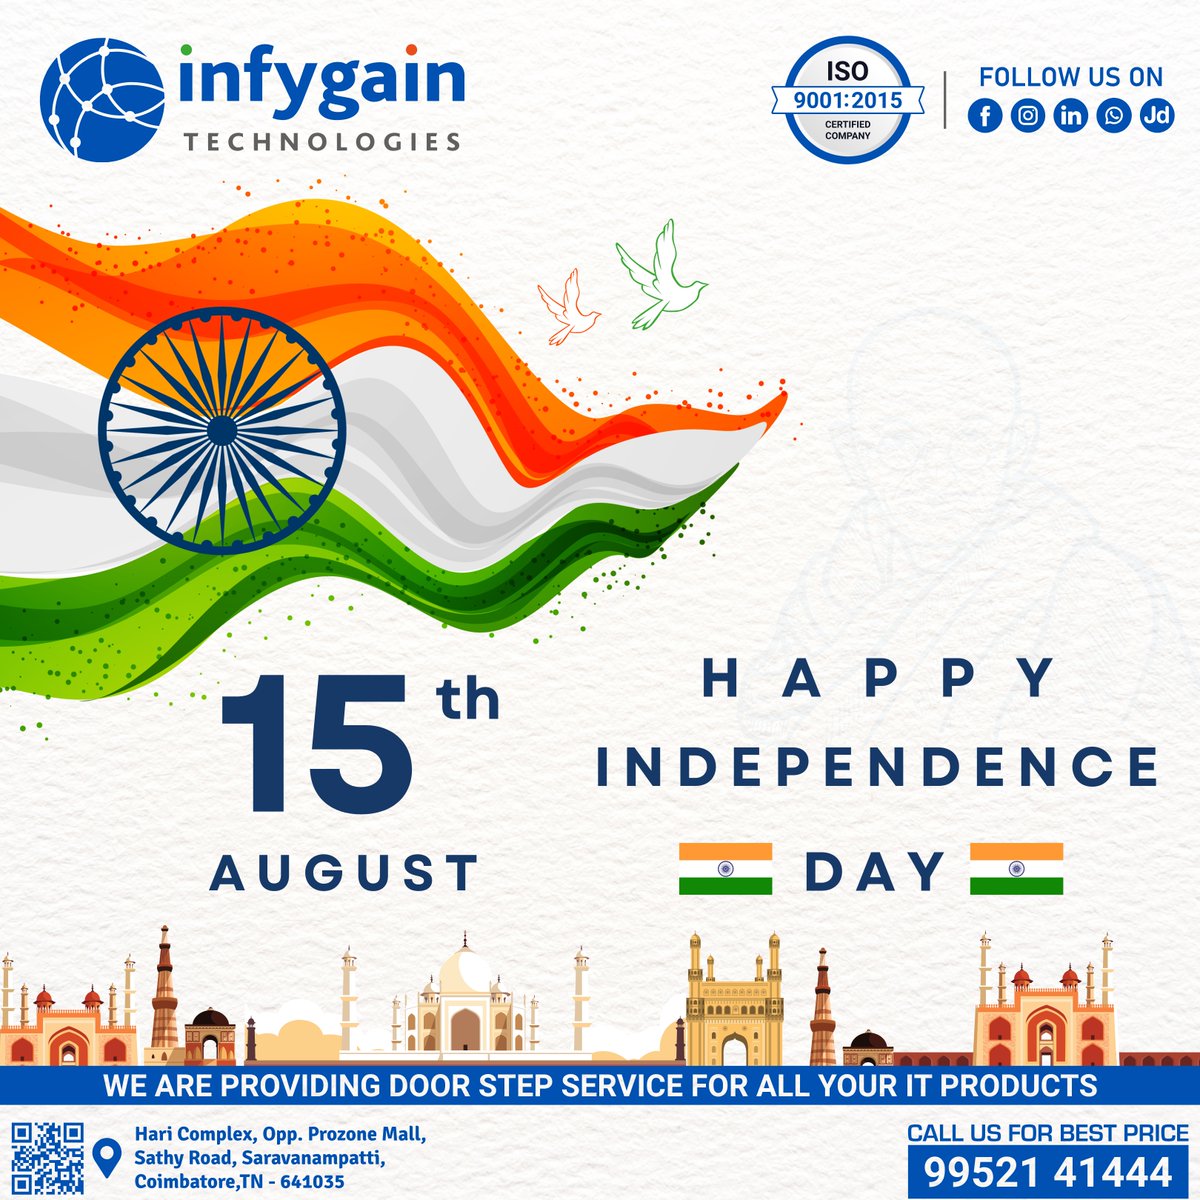 🇮🇳 Celebrating the Spirit of Independence! 🇮🇳

Wishing you all a joyous and proud Independence Day! 🙌🎆🌟

#IndependenceDayIndia #ProudToBeIndian #JaiHind #75thIndependenceDay #UnityInDiversity